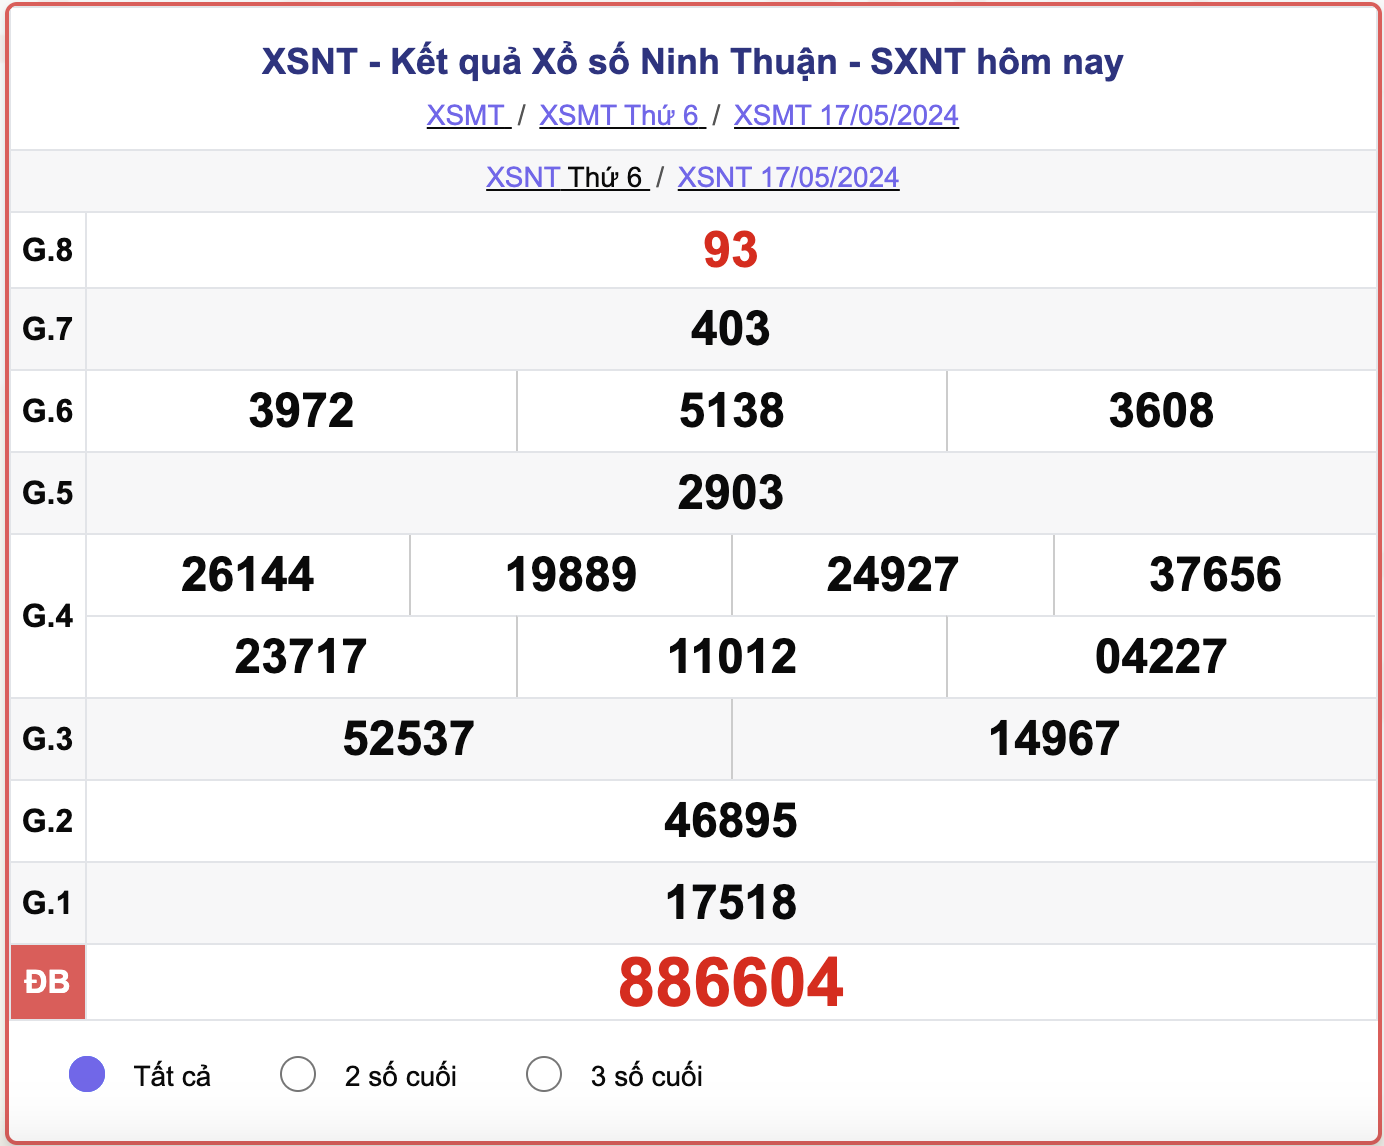 XSNT thứ Sáu, kết quả xổ số Ninh Thuận ngày 17/5/2024.